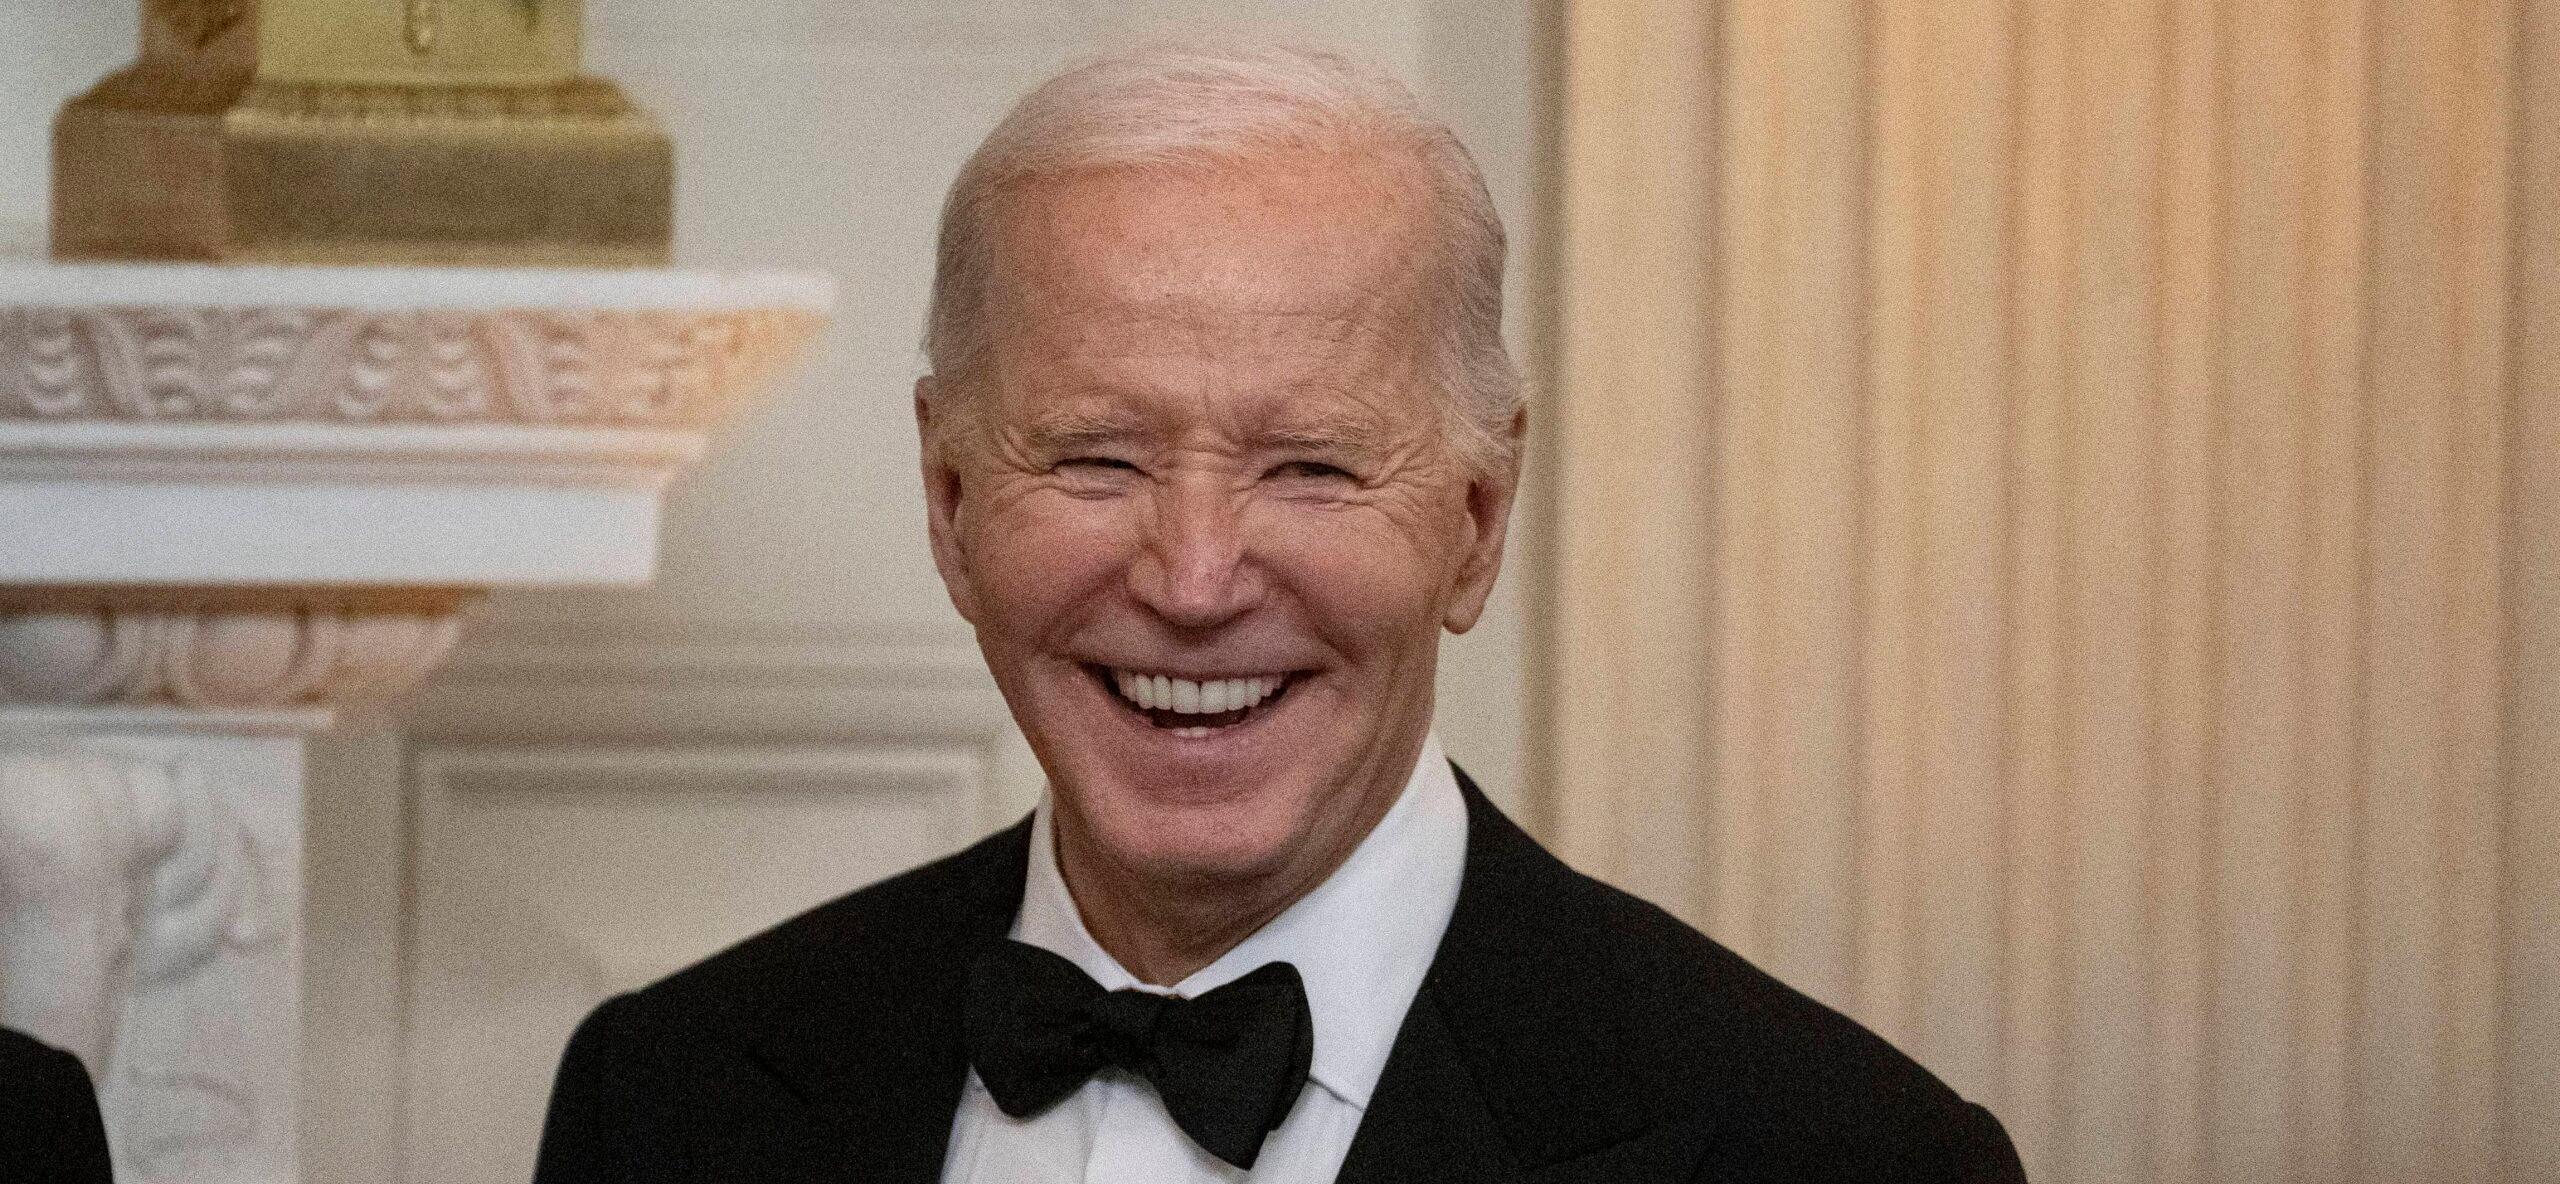 Joe Biden Announces He Is Getting A 'Physical' Amid Mental Health Concerns